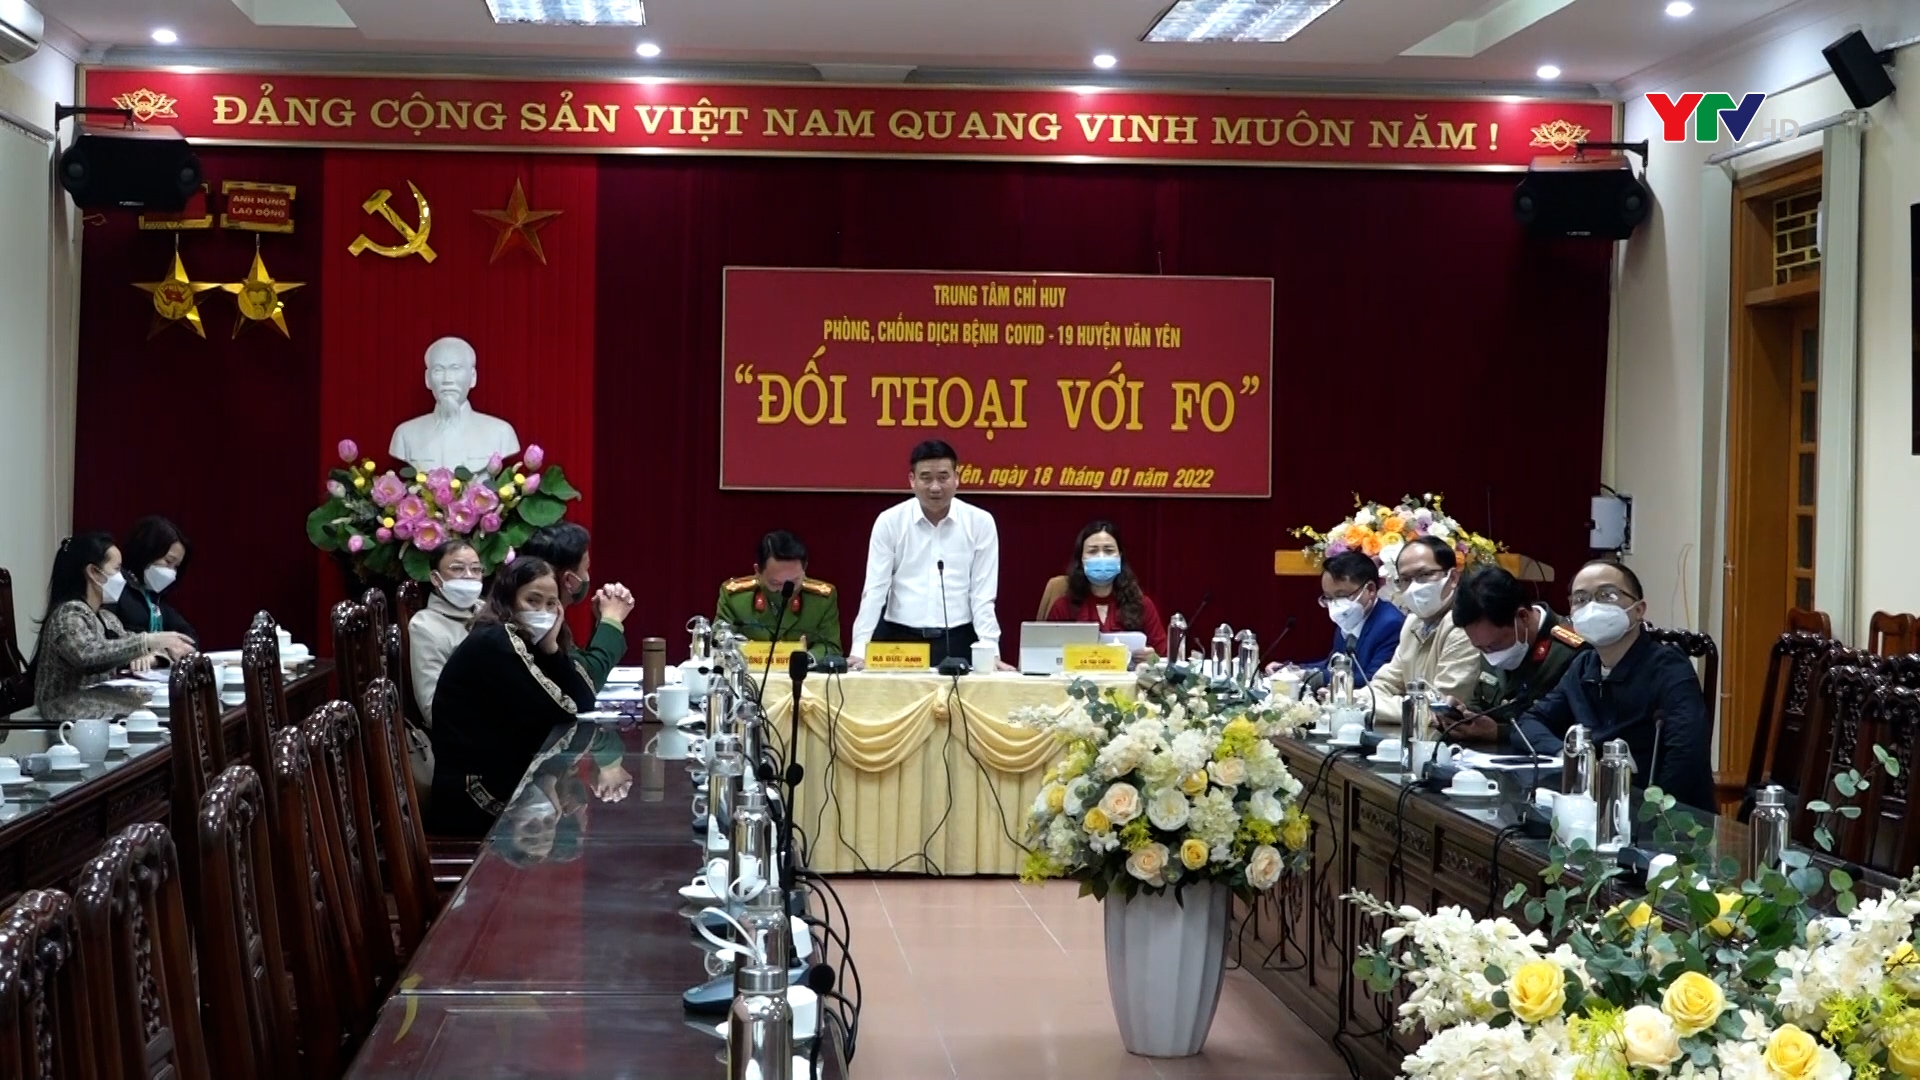 Huyện Văn Yên tổ chức “Đối thoại với F0” đang điều trị, cách ly y tế tại nhà